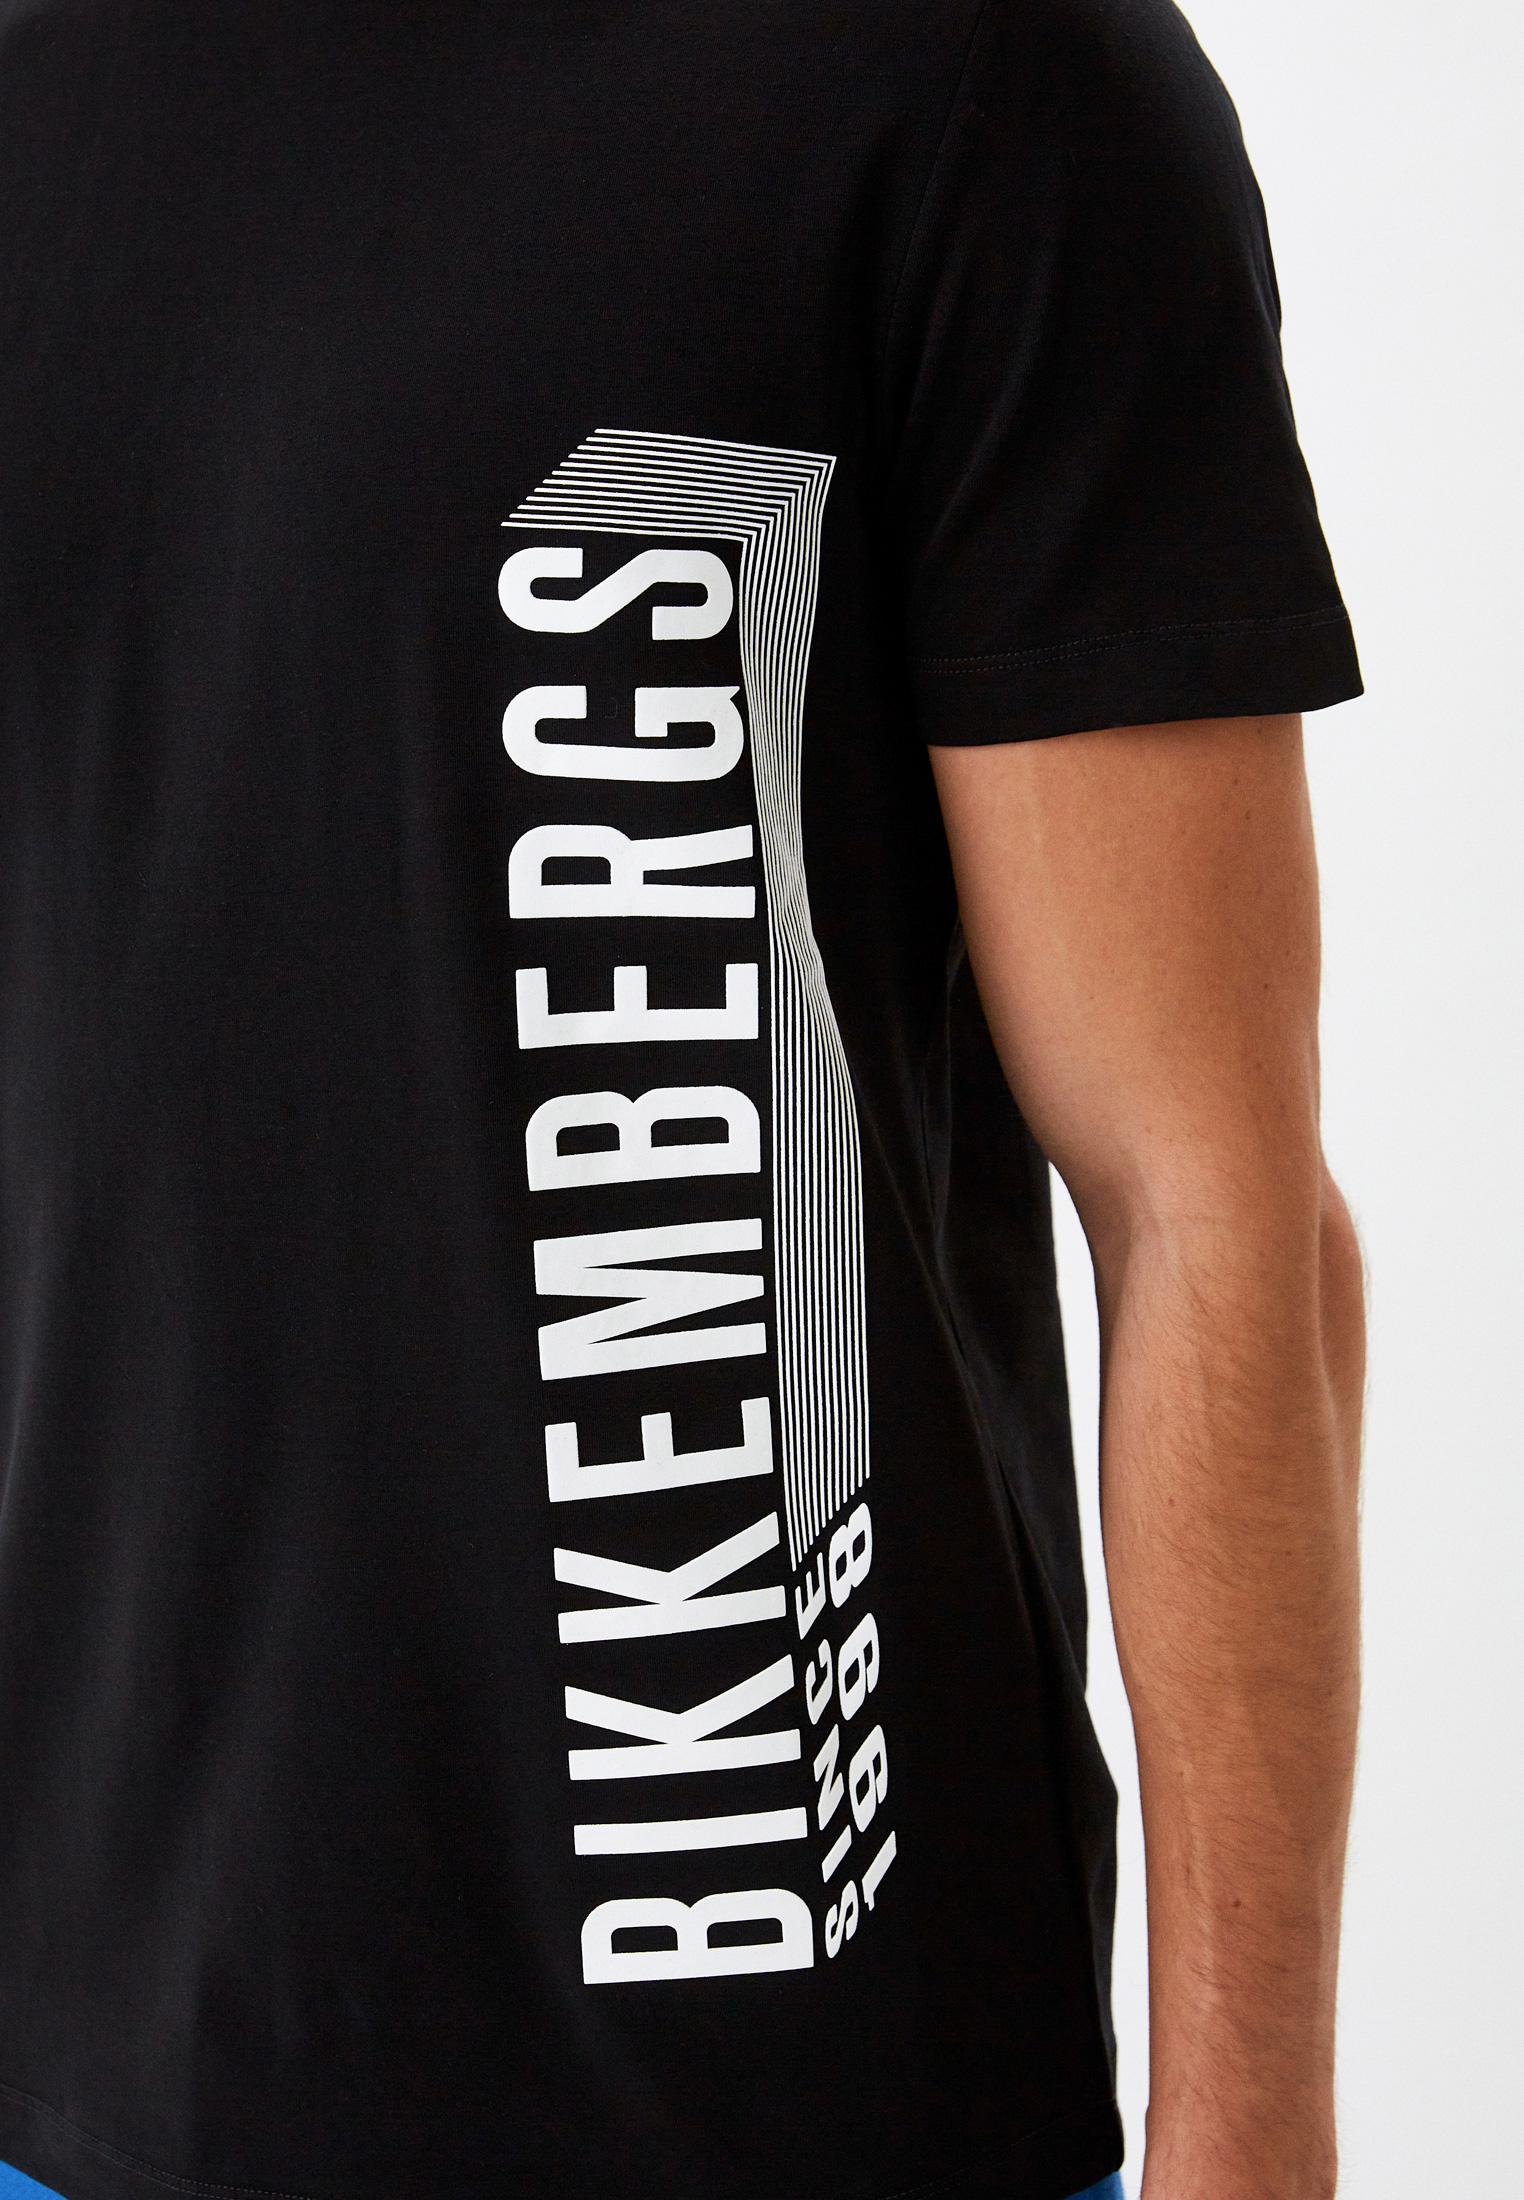 Мужская футболка Bikkembergs (Биккембергс) C 4 101 47 E 2296: изображение 9